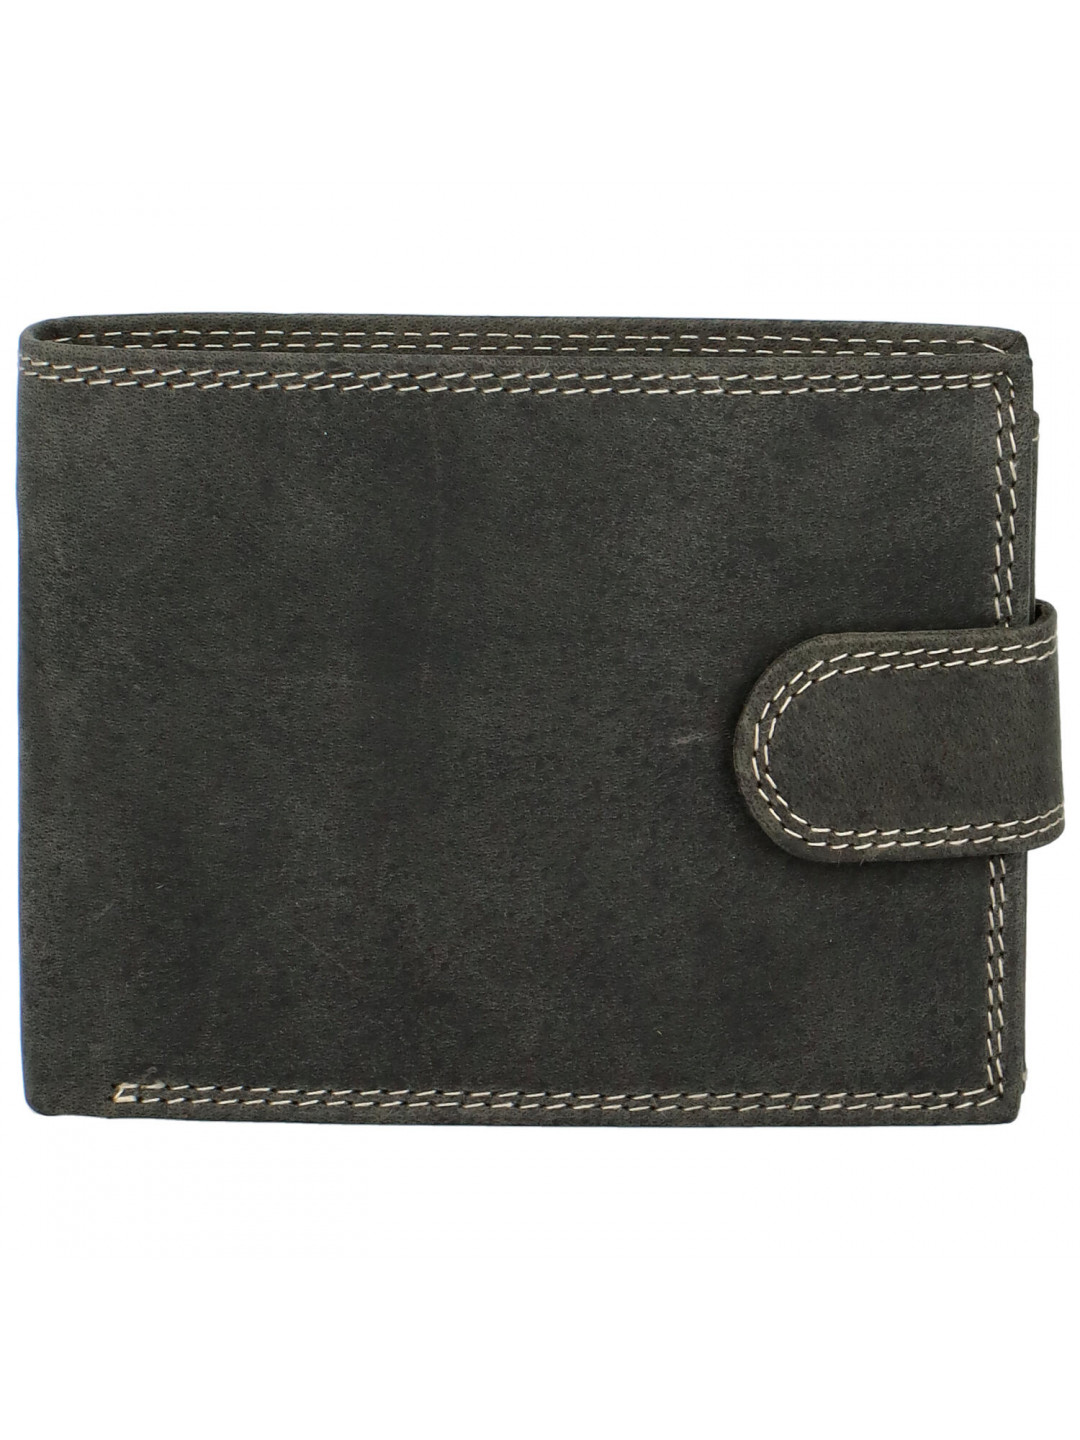 Pánská kožená peněženka černá broušená – Tomas Alkiko